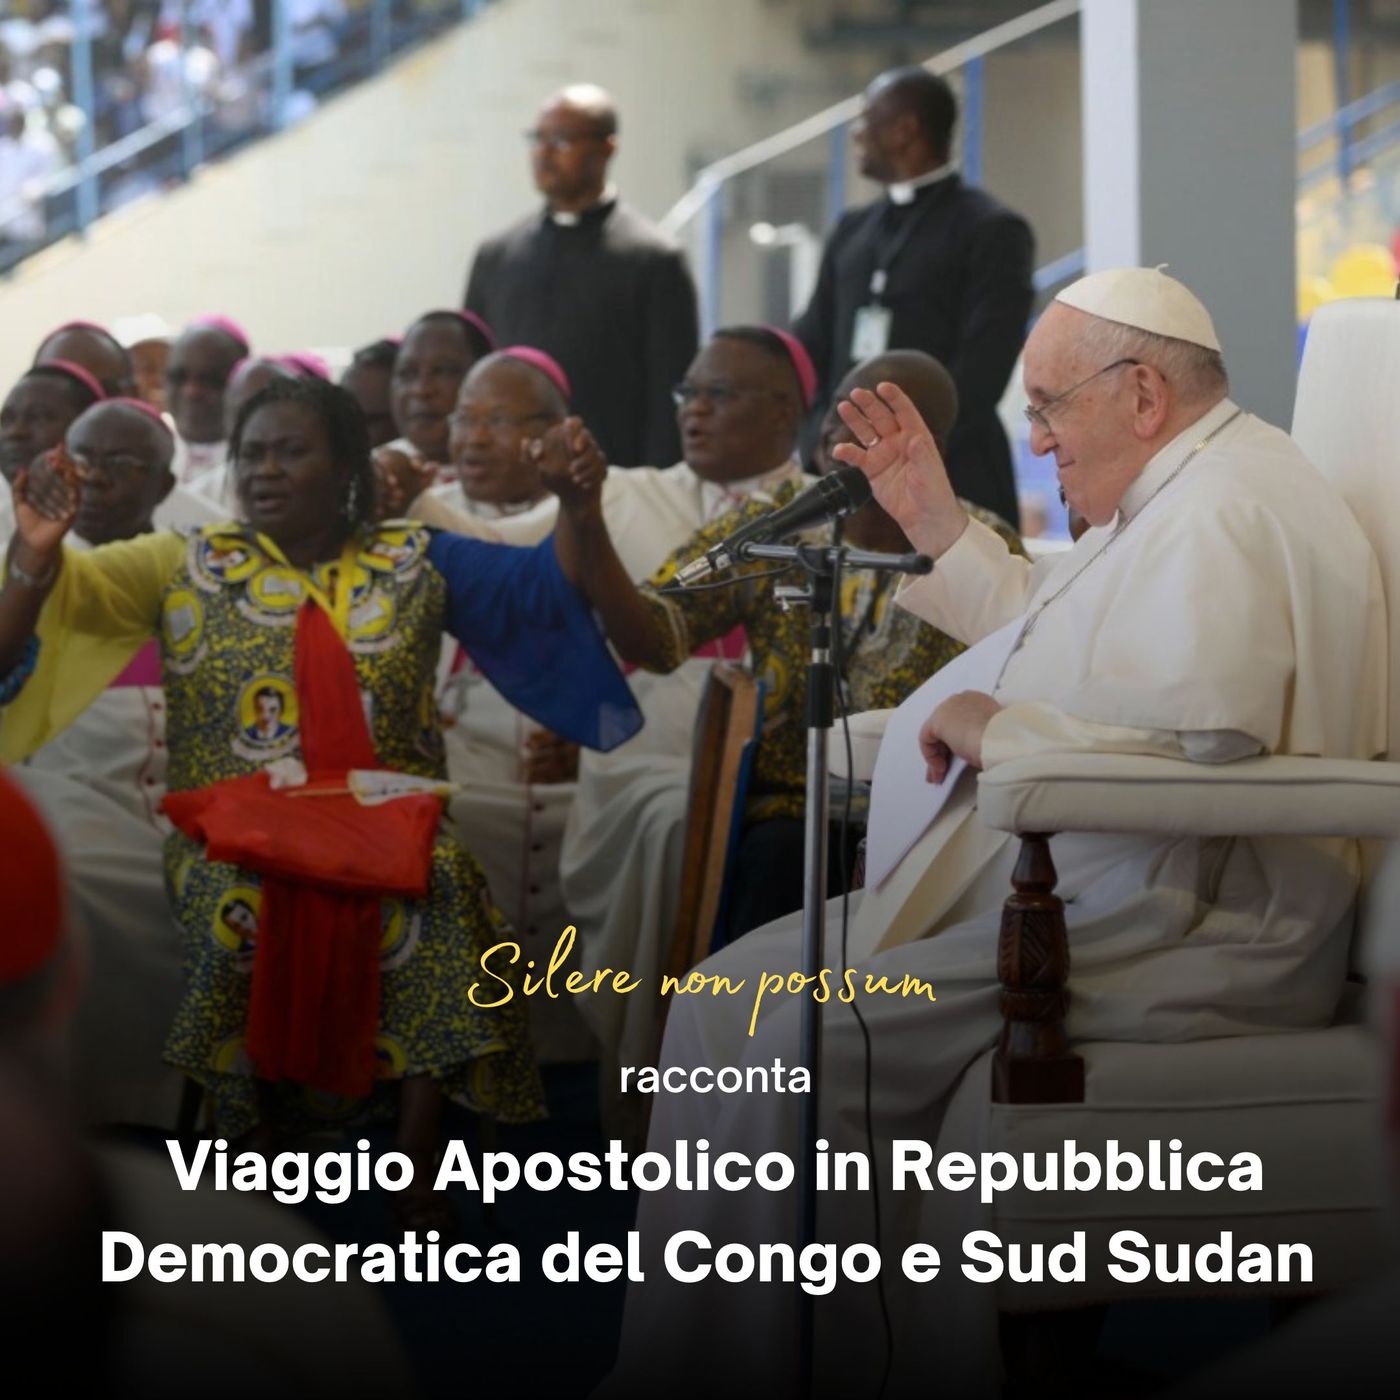 - Day 5 - Viaggio Apostolico in Repubblica Democratica del Congo e Sud Sudan